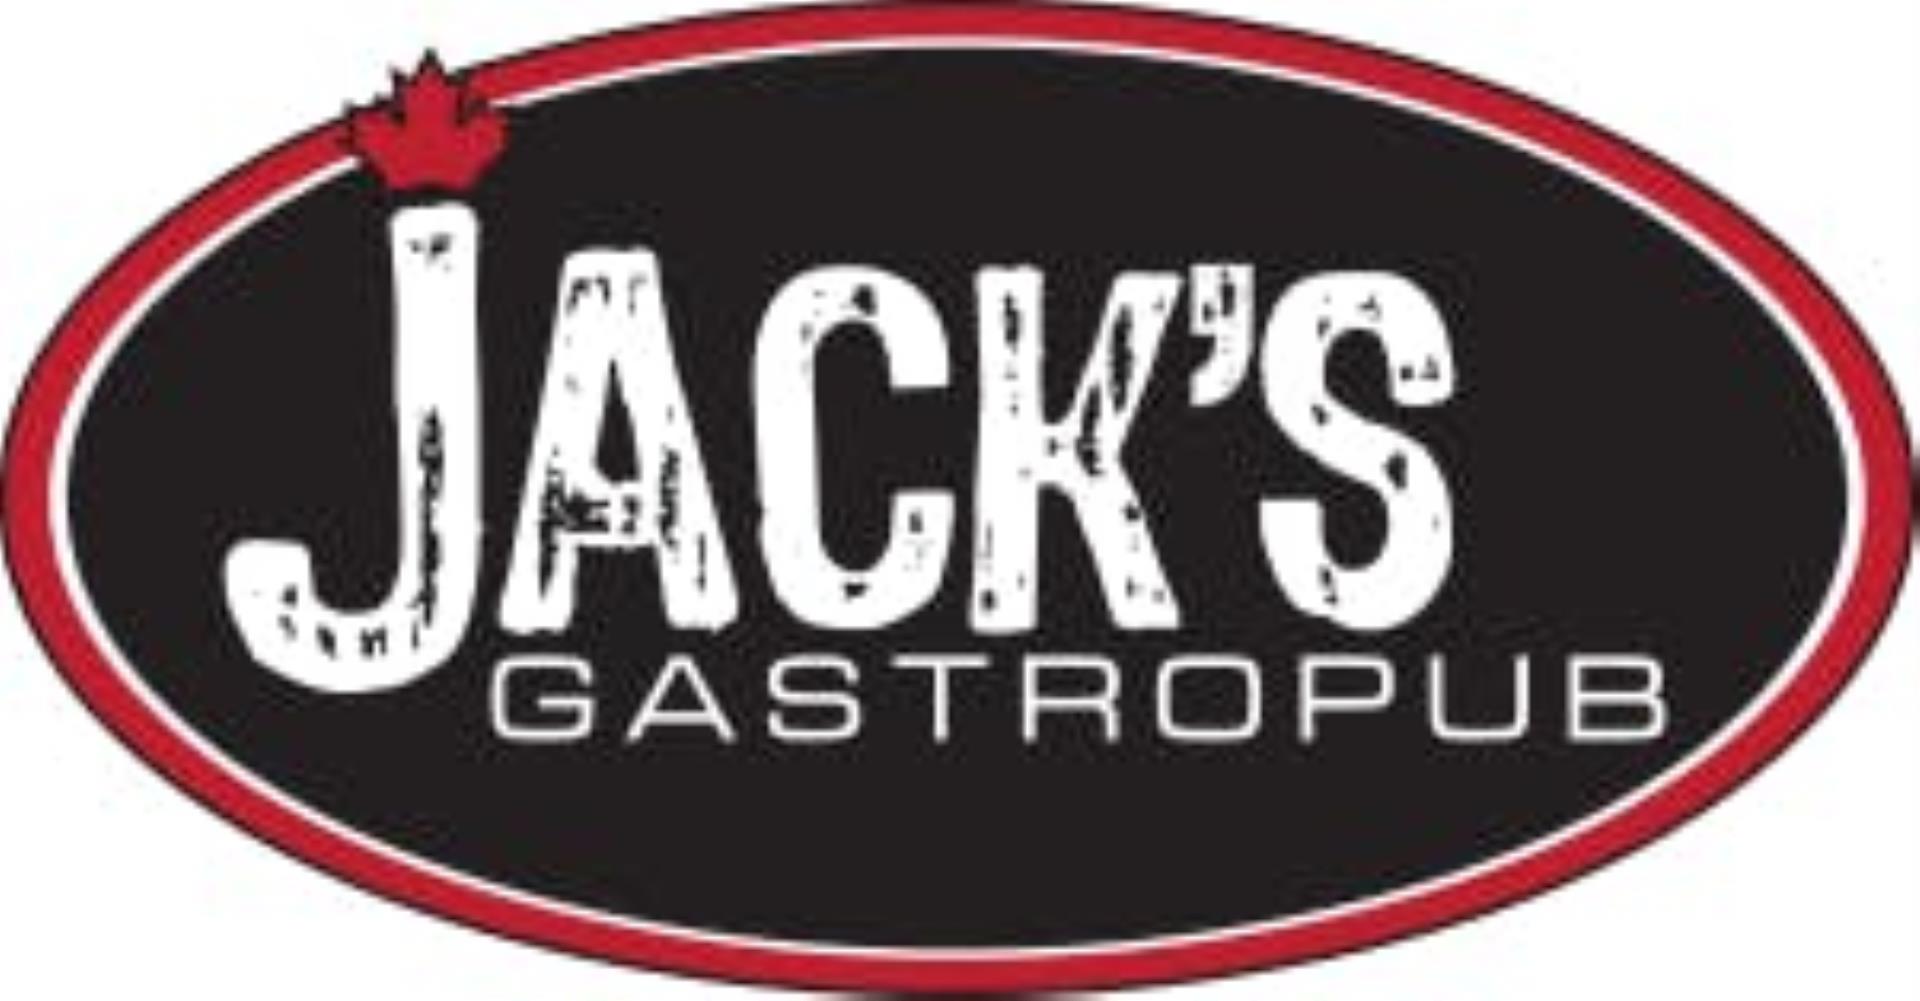 Jack's GastroPub Restaurant - Picture